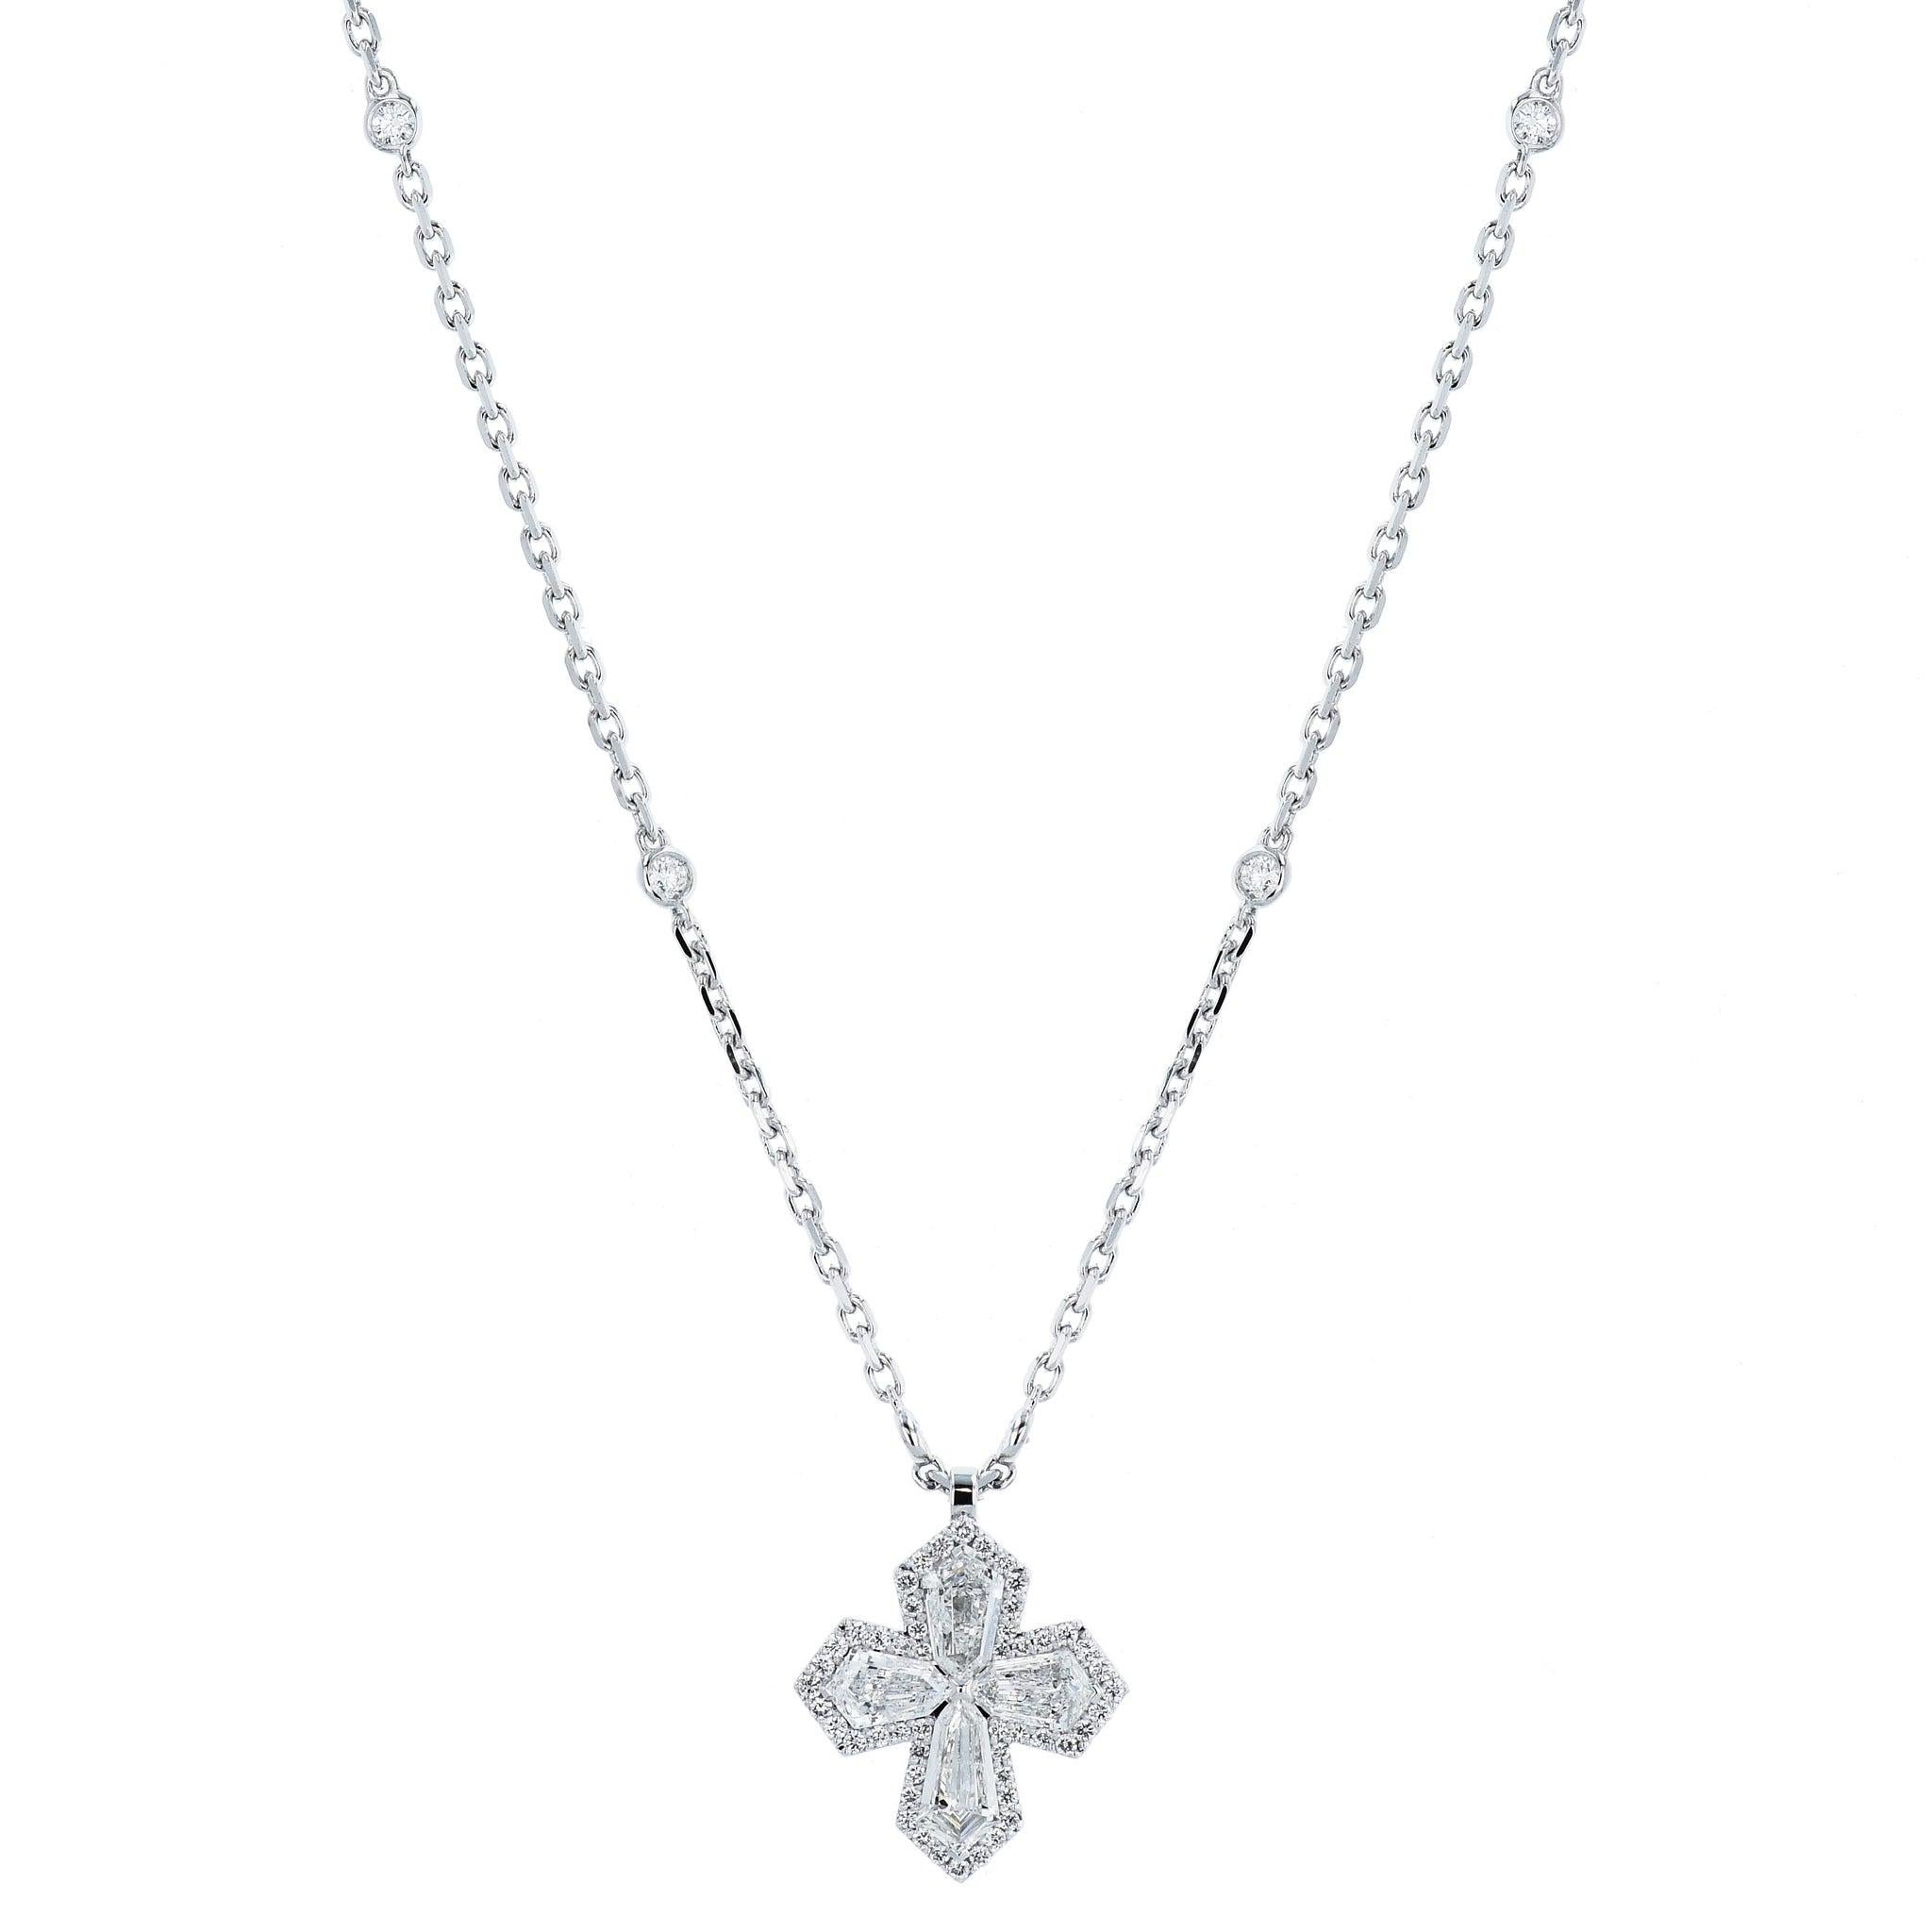 Élevez-vous avec ce collier à pendentif en or blanc avec croix en diamant.
Cette magnifique croix et ce collier sont réalisés en or blanc 18 carats. Il contient 1,57 carats de diamants F-VS1, 0,25 carats de diamants F-SI, 0,25 carats de diamants